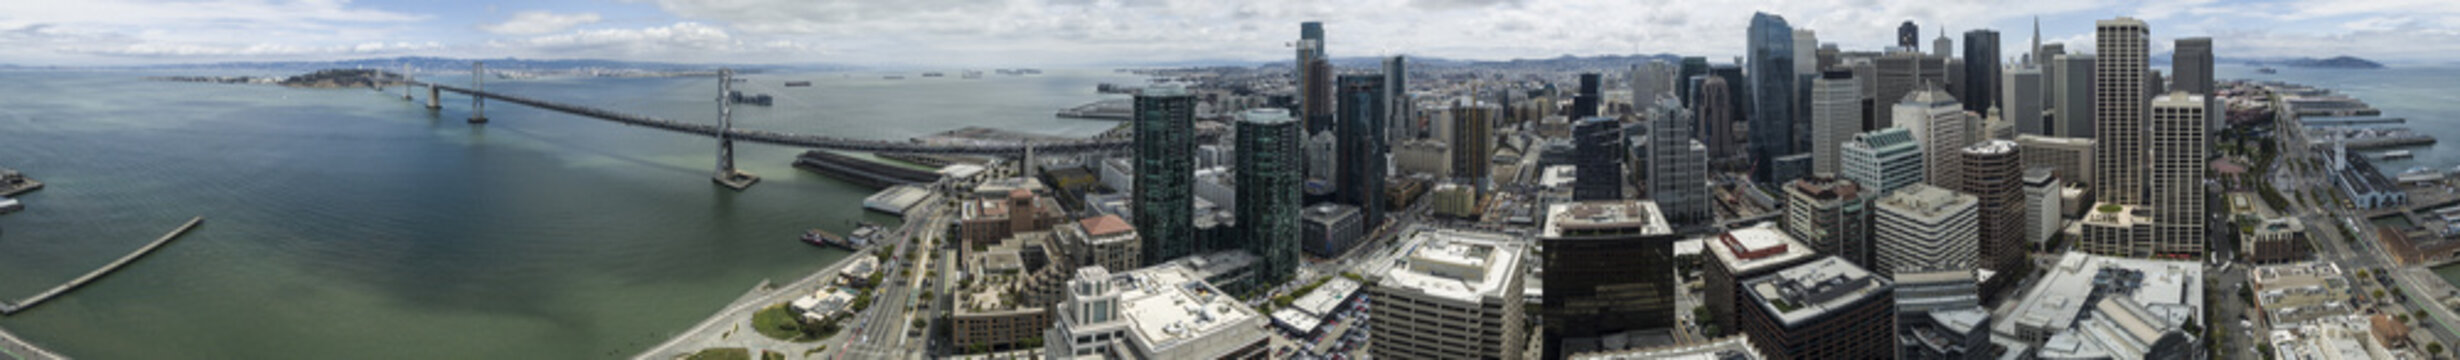 San Francisco, CA Bay Bridge Drone 360 Degree Panorama - High Resolution © Nathan